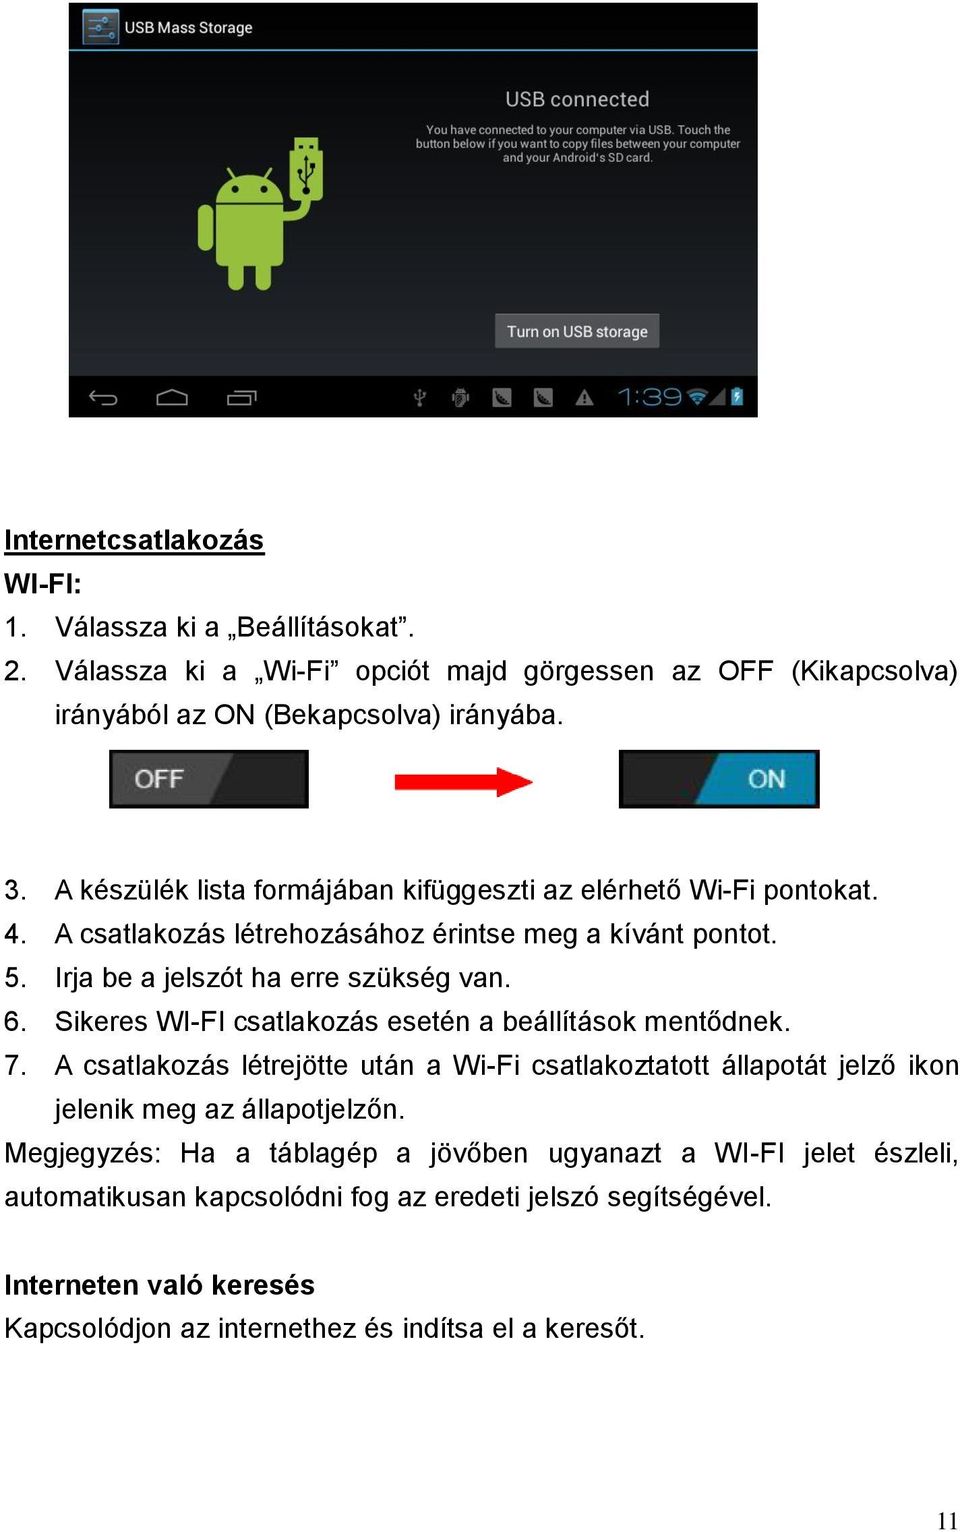 Sikeres WI-FI csatlakozás esetén a beállítások mentődnek. 7. A csatlakozás létrejötte után a Wi-Fi csatlakoztatott állapotát jelző ikon jelenik meg az állapotjelzőn.